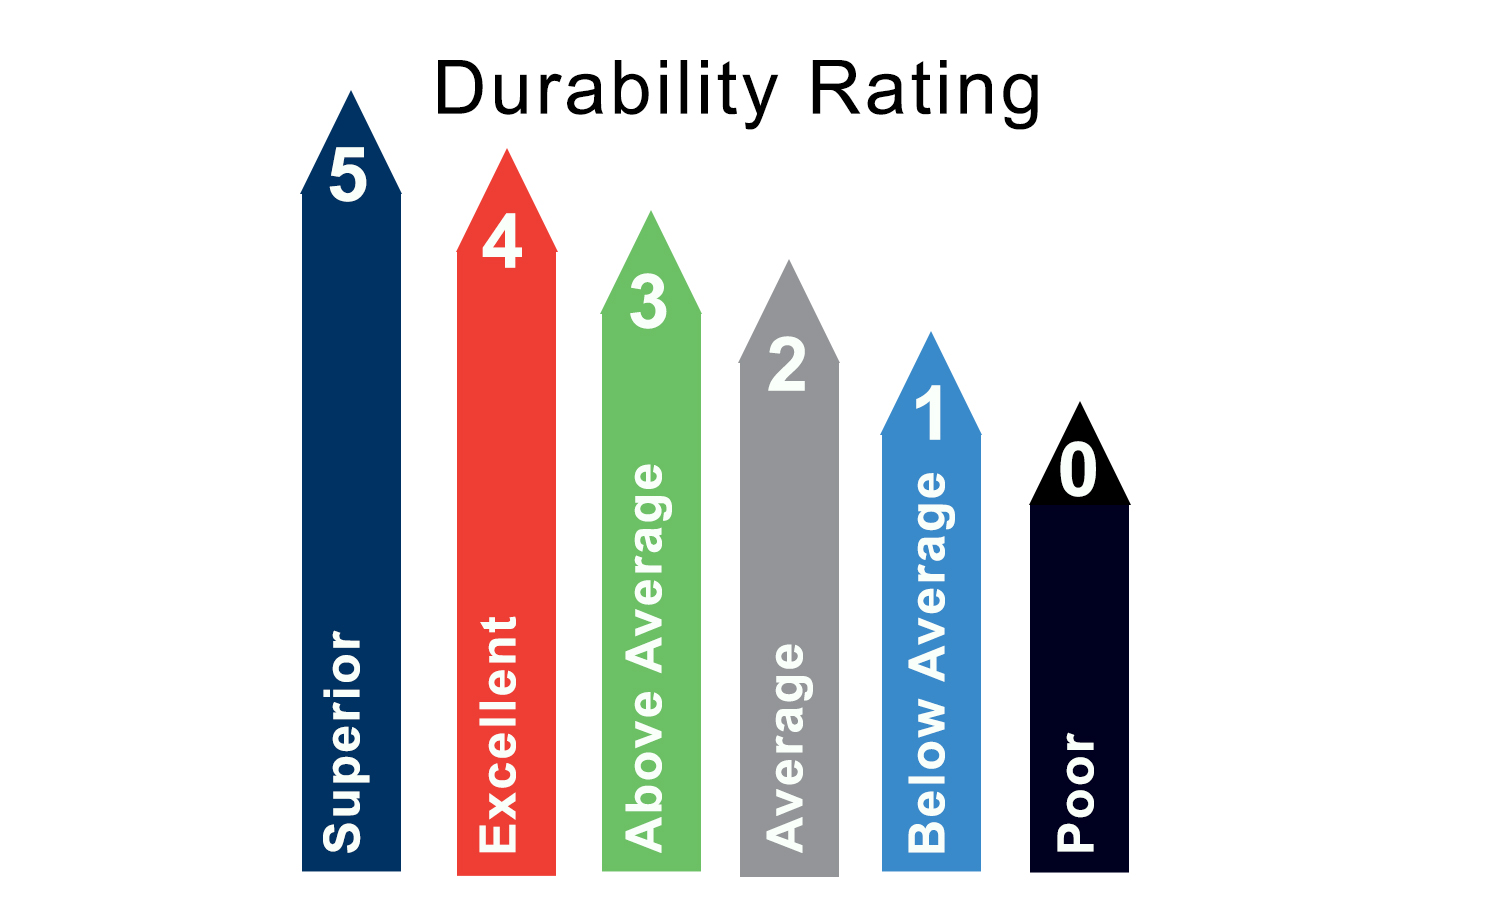 Windshield Repair Bur Durability Rating scale